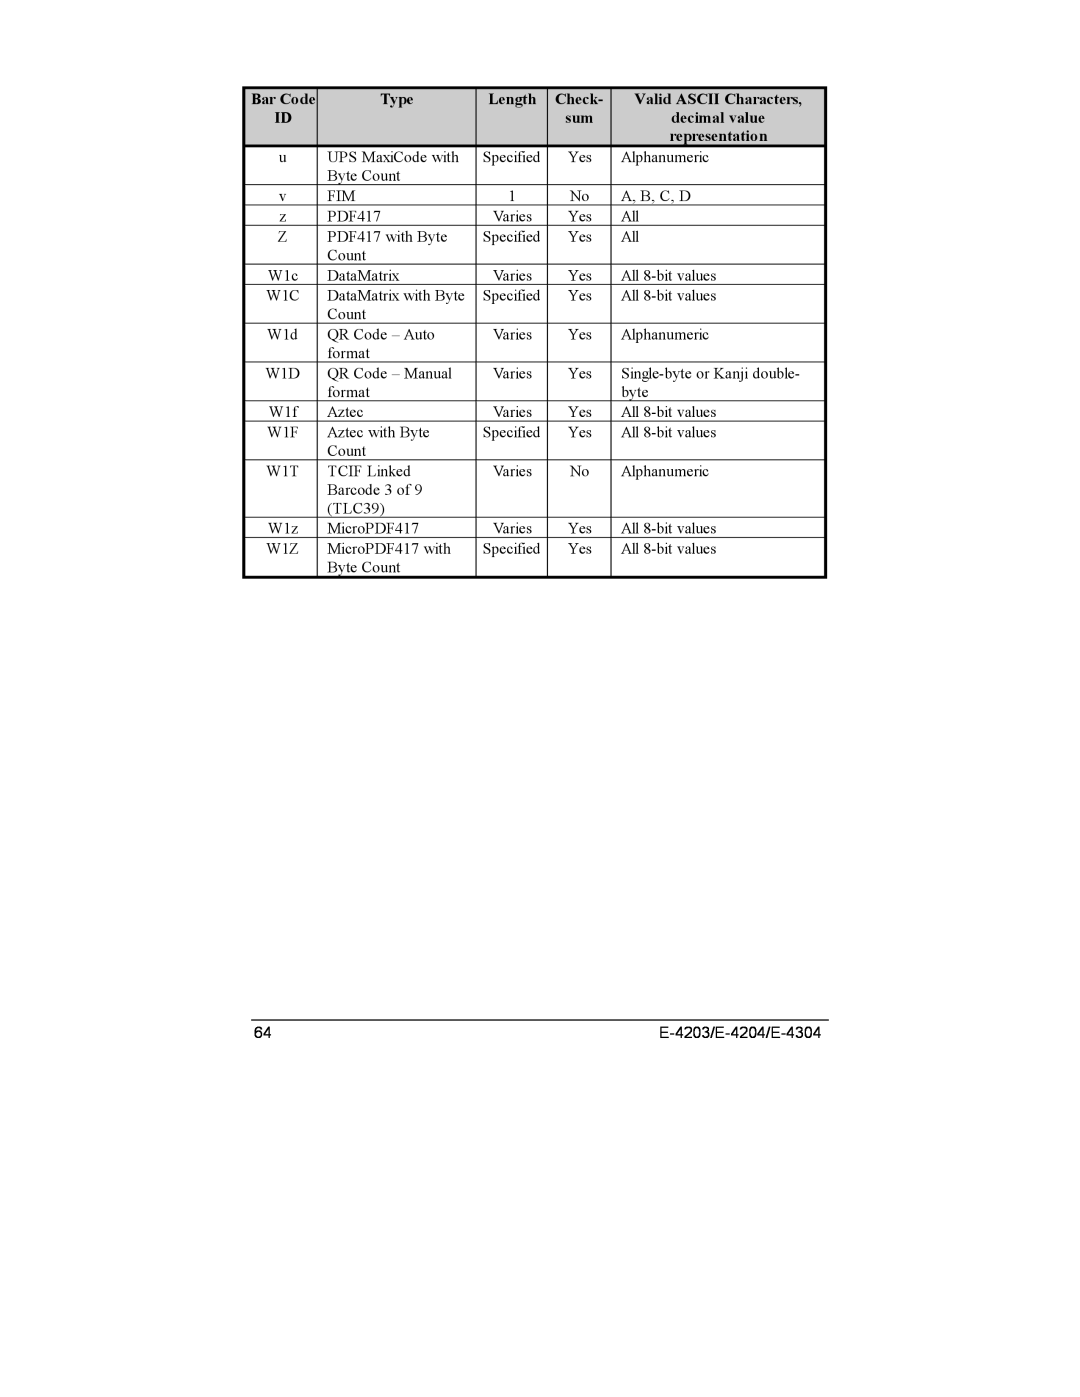 Datamax E-4304e, E-4203, E-4204 manual Bar Code, Type, Length, Check, Valid ASCII Characters 